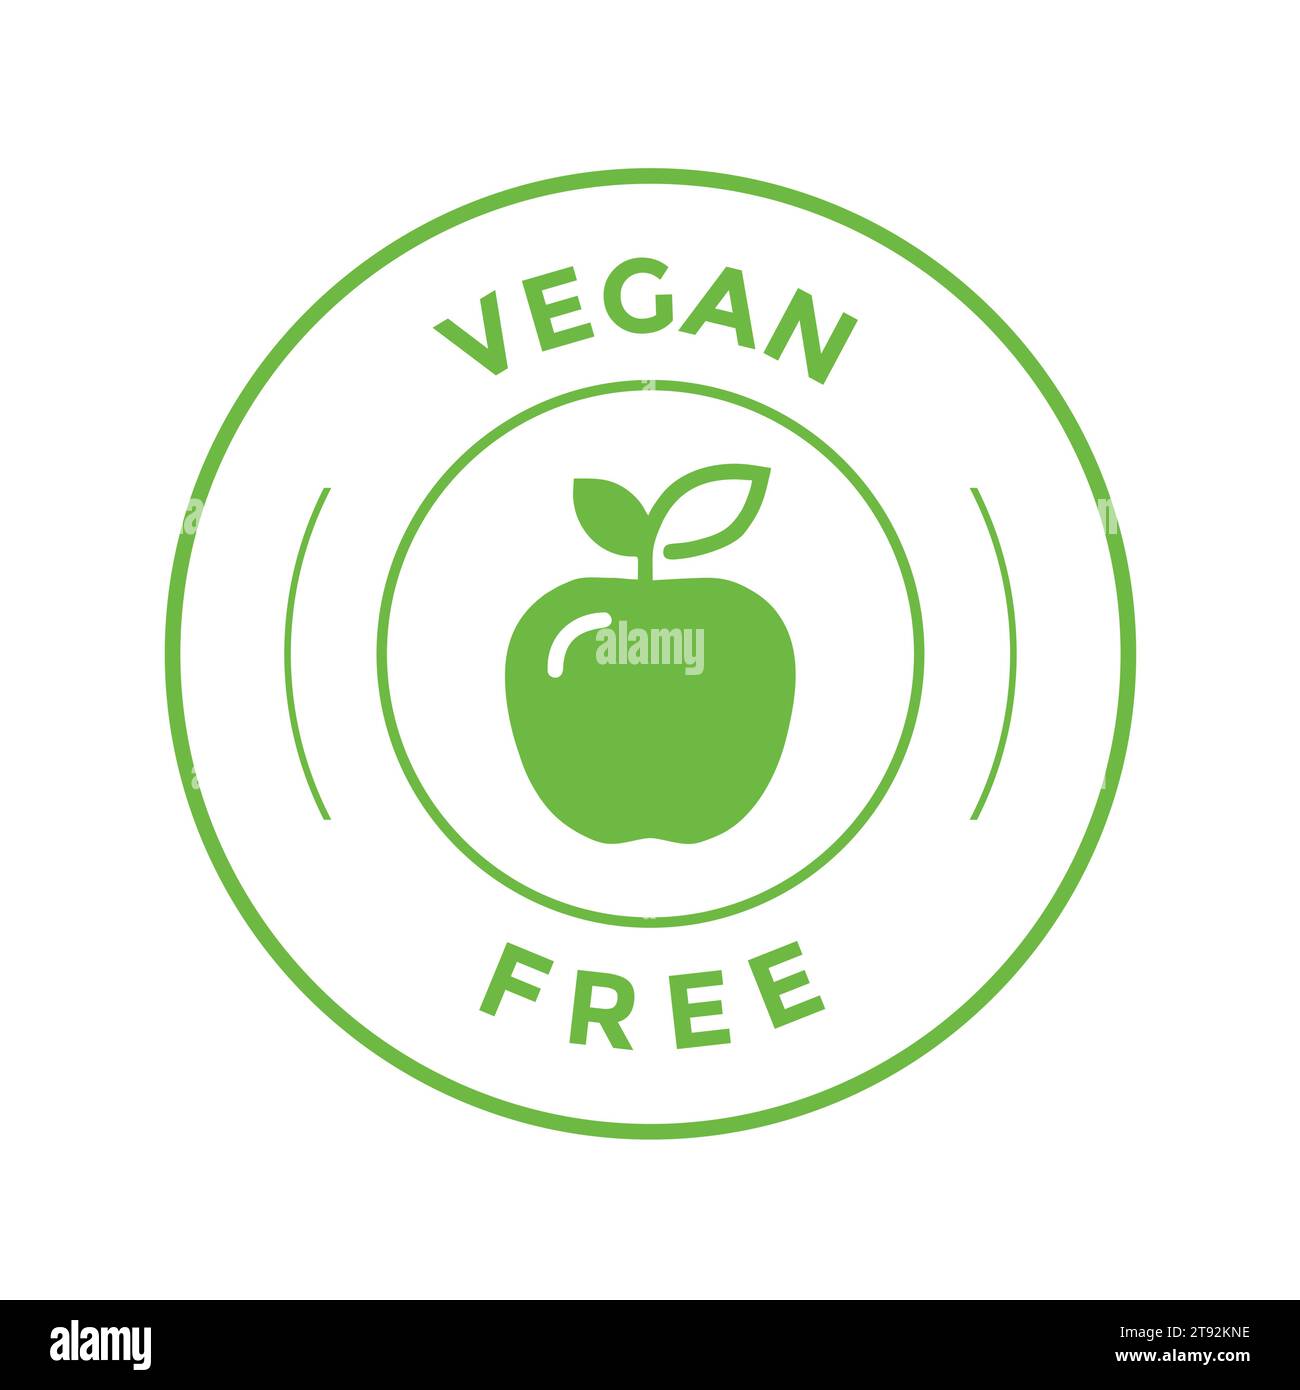 Vegane Ernährungsdiät-Symbol. Bio-, Bio-, Öko-Symbol. Vegan, kein Fleisch, laktosefrei, gesund, frisch und gewaltfrei. Runder grüner Vektor-Illustration Stock Vektor